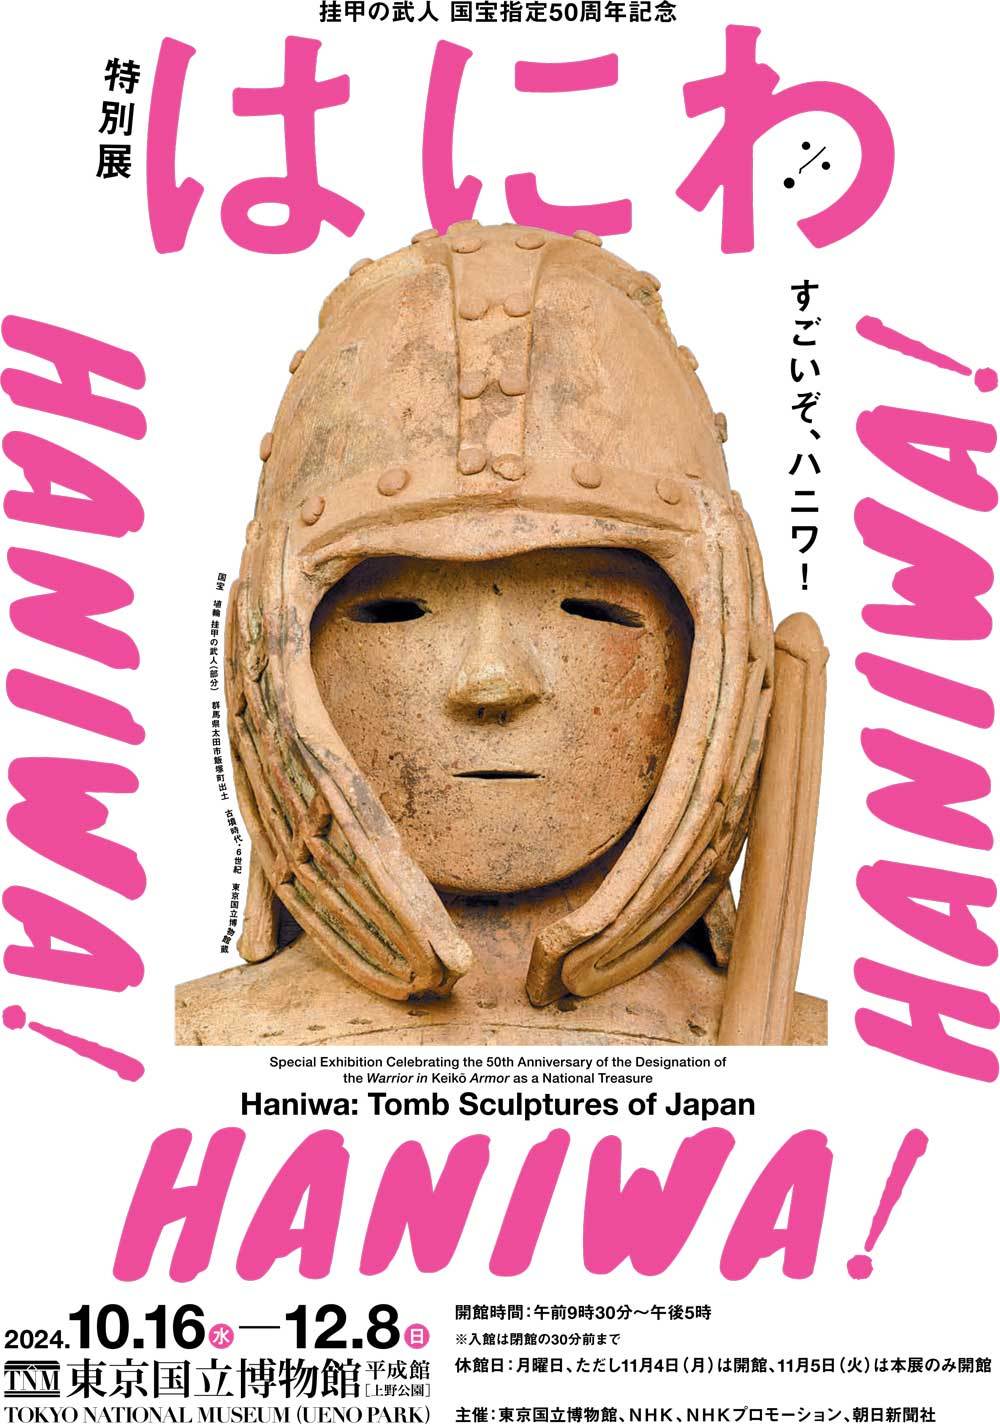 すごいぞハニワ! 東博で特別展「はにわ」が10月に開催-多数の国宝含む 